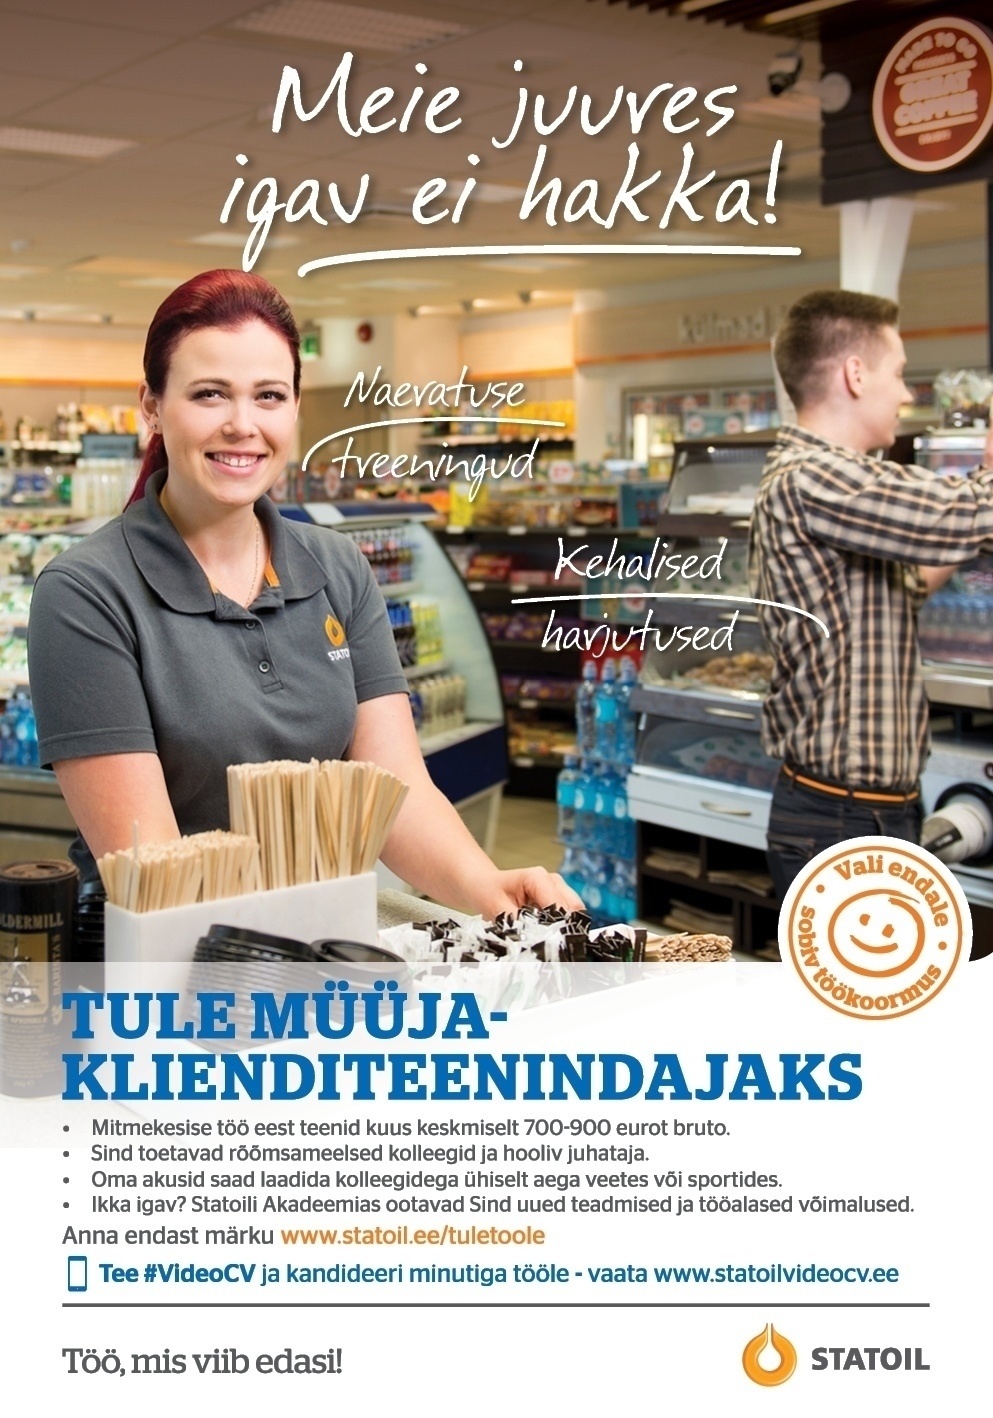 Circle K Eesti AS Müüja-klienditeenindaja Pärnu teenindusjaamadesse